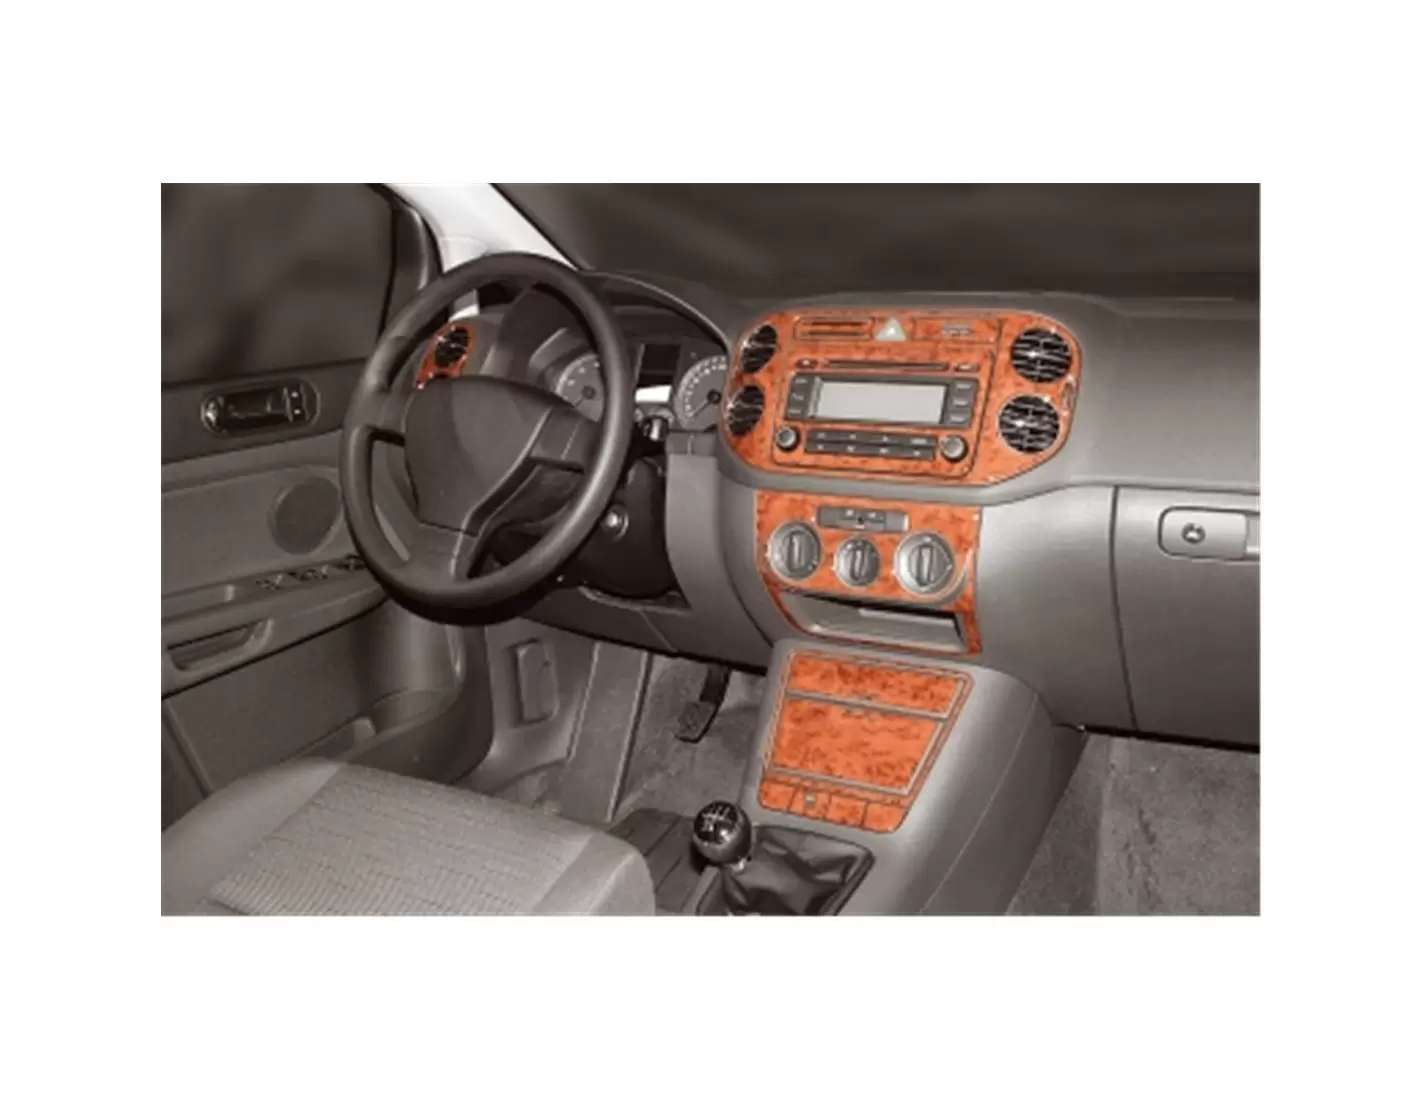 Volkswagen Dekor 16-Parts Interior 12.2004 3D Dashboard V Trim Plus Trim Dash Golf Kit